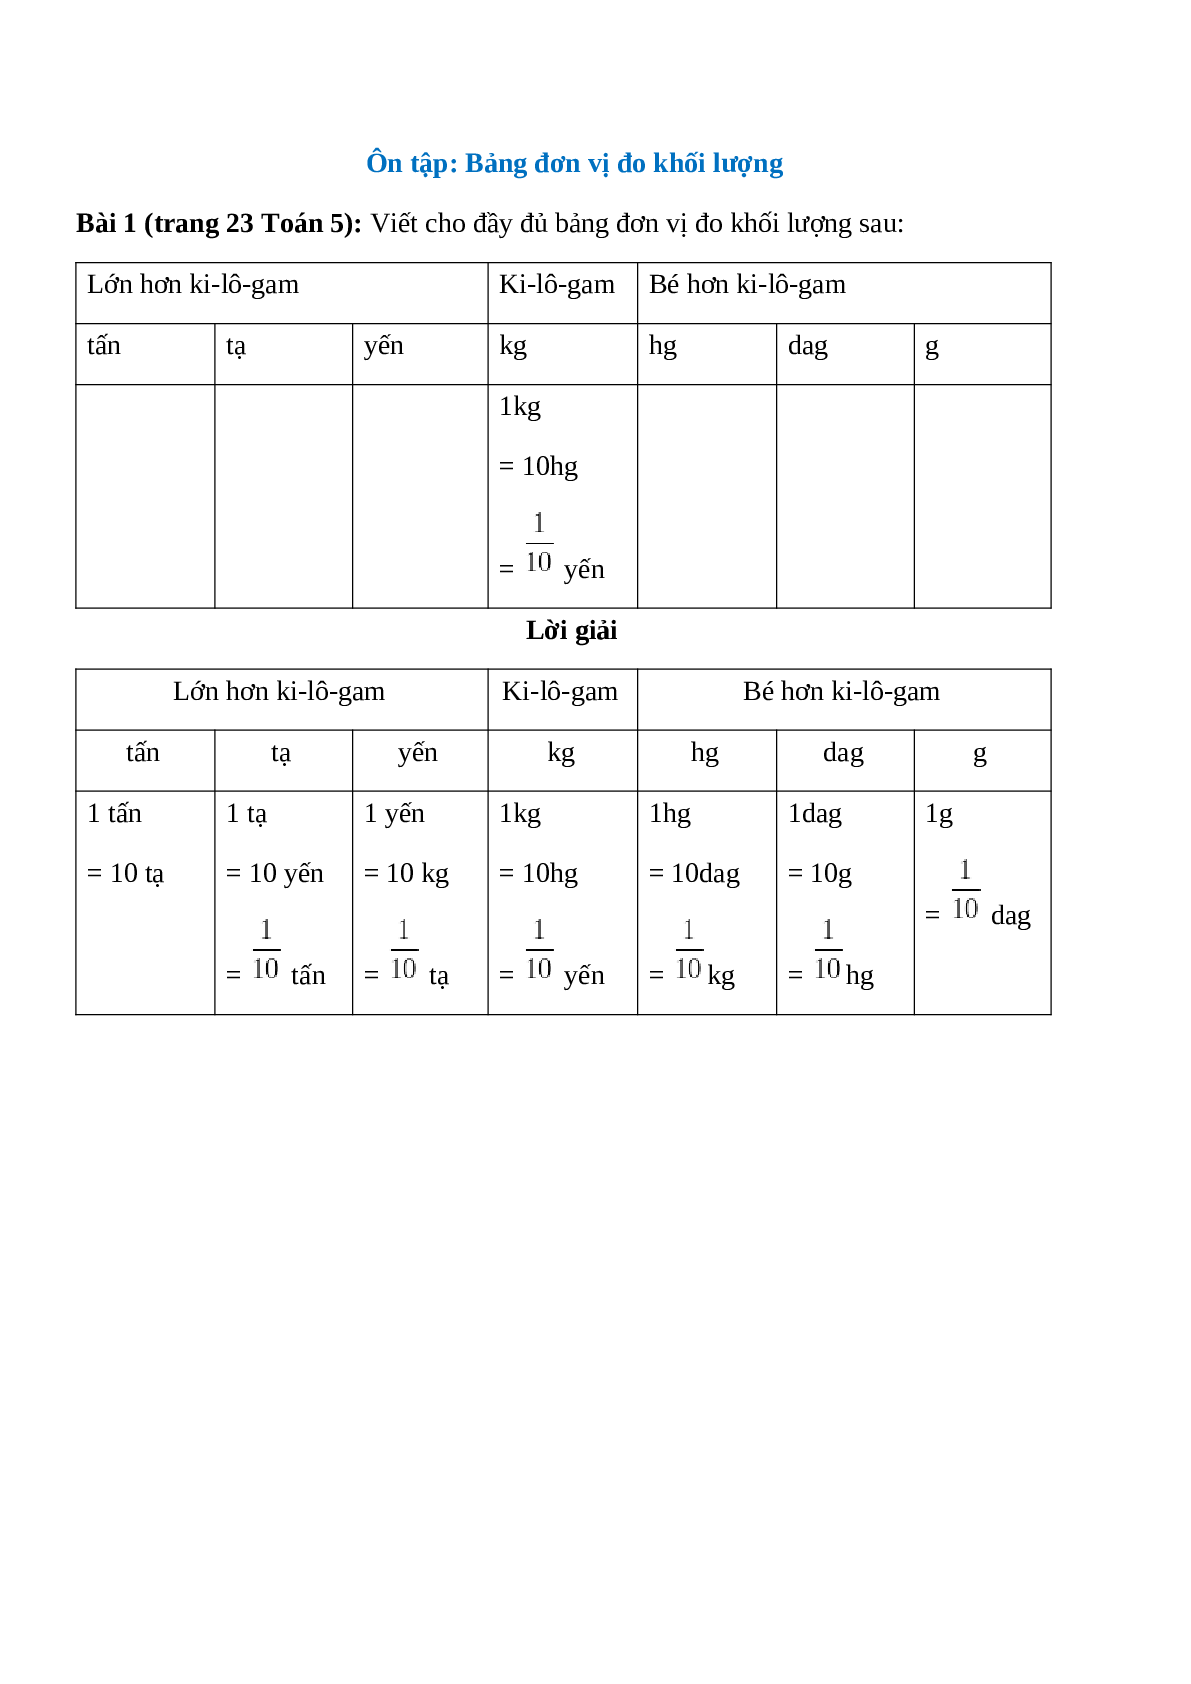 Viết cho đầy đủ bảng đơn vị đo khối lượng sau (trang 1)